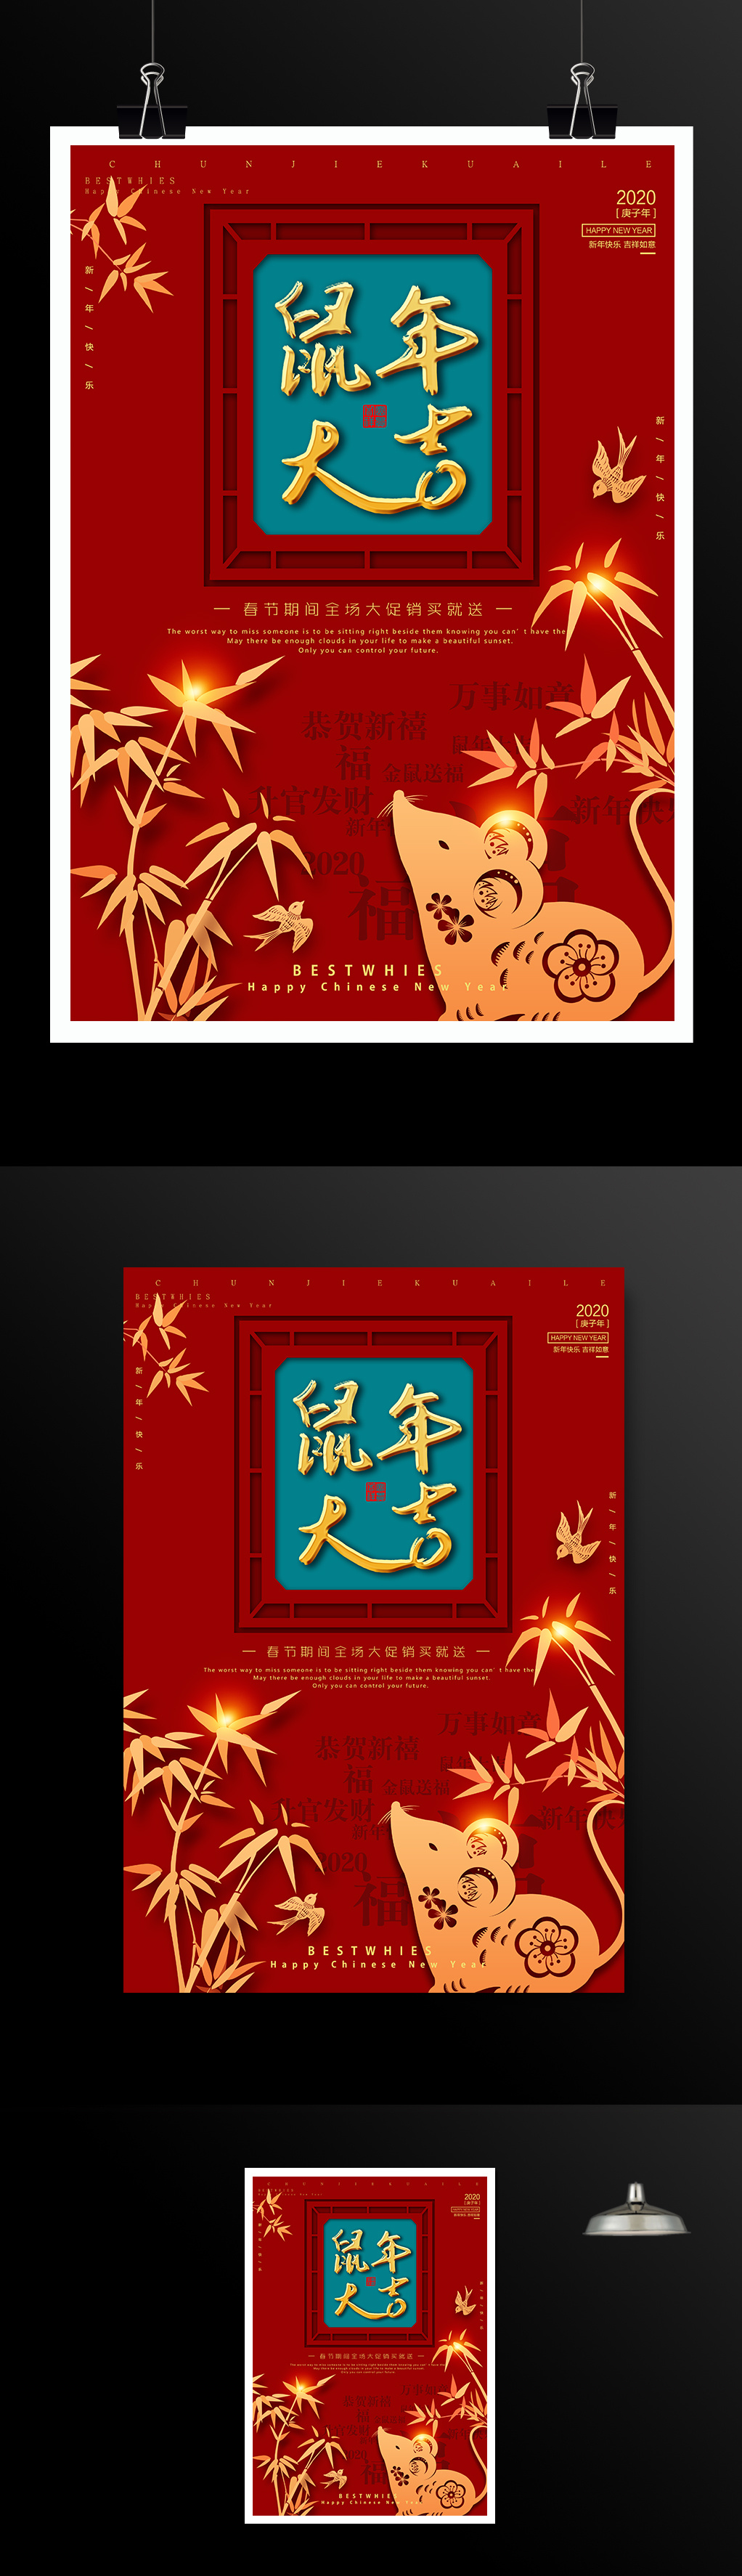 鼠年大吉新年春节海报